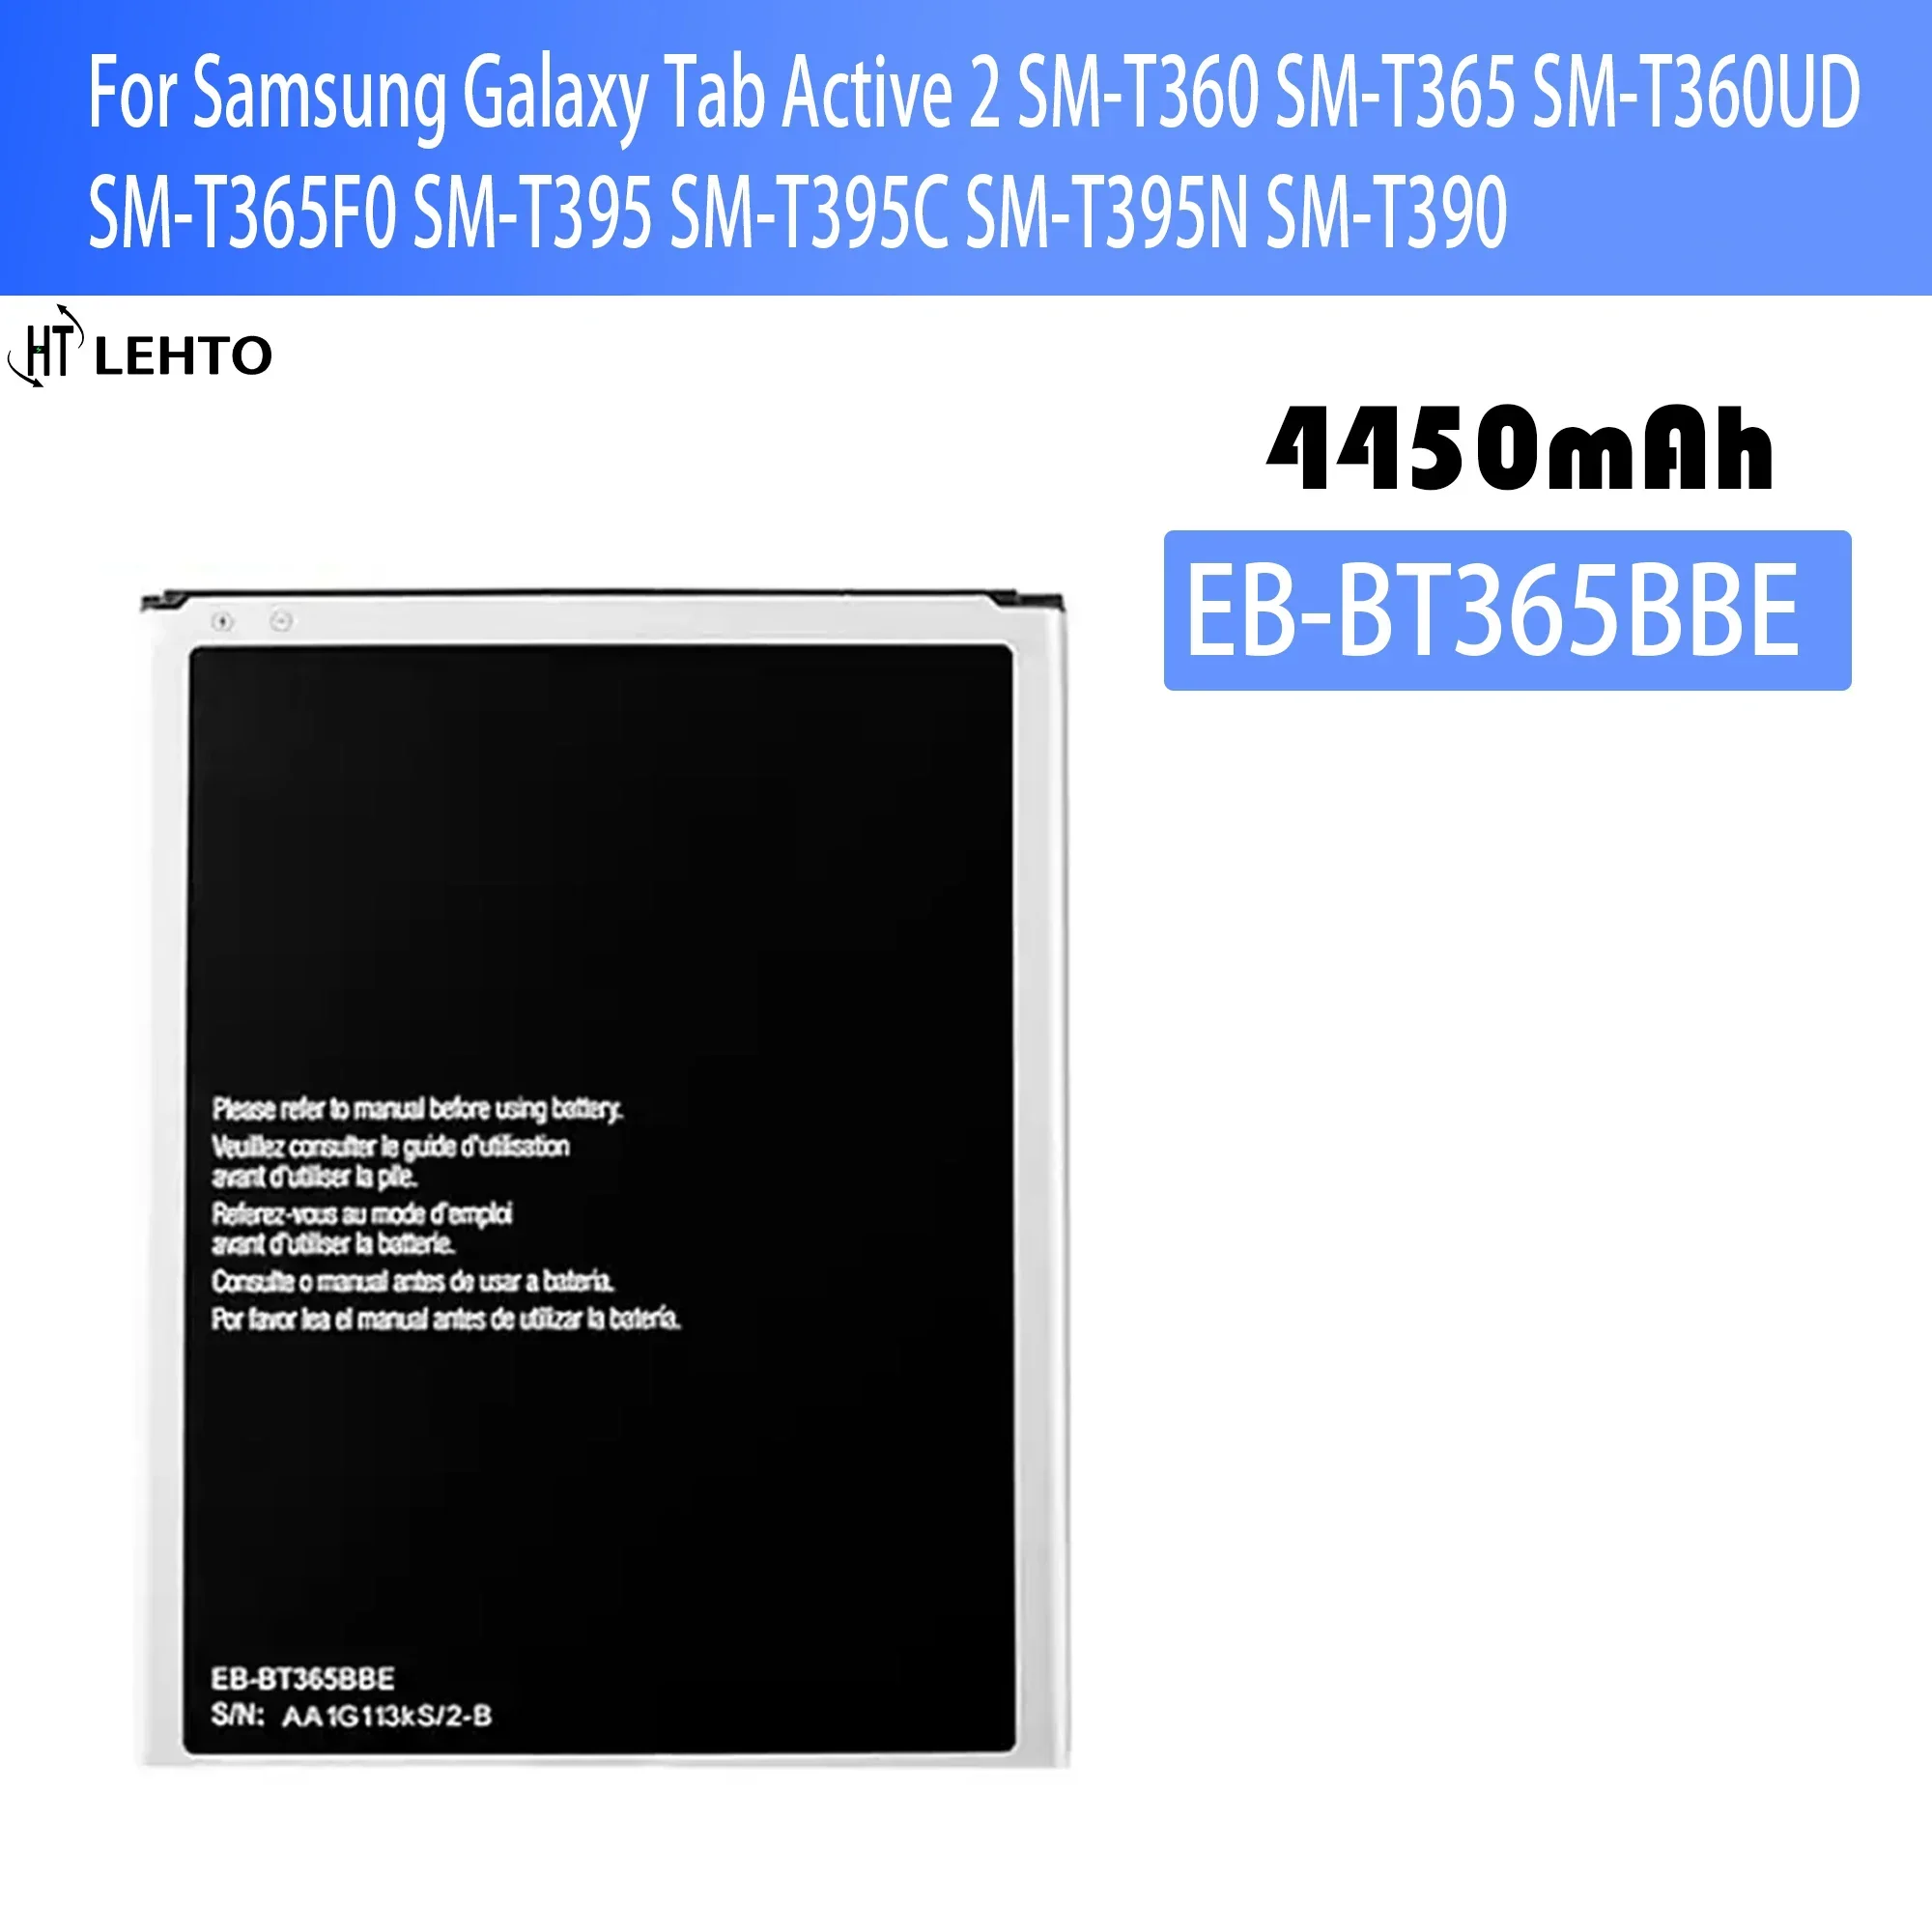 

EB-BT365BBC Battery For Samsung Galaxy Tab Active 2 SM-T360 SM-T365 SM-T360UD SM-T365F0 SM-T395 SM-T395C SM-T395N SM-T390